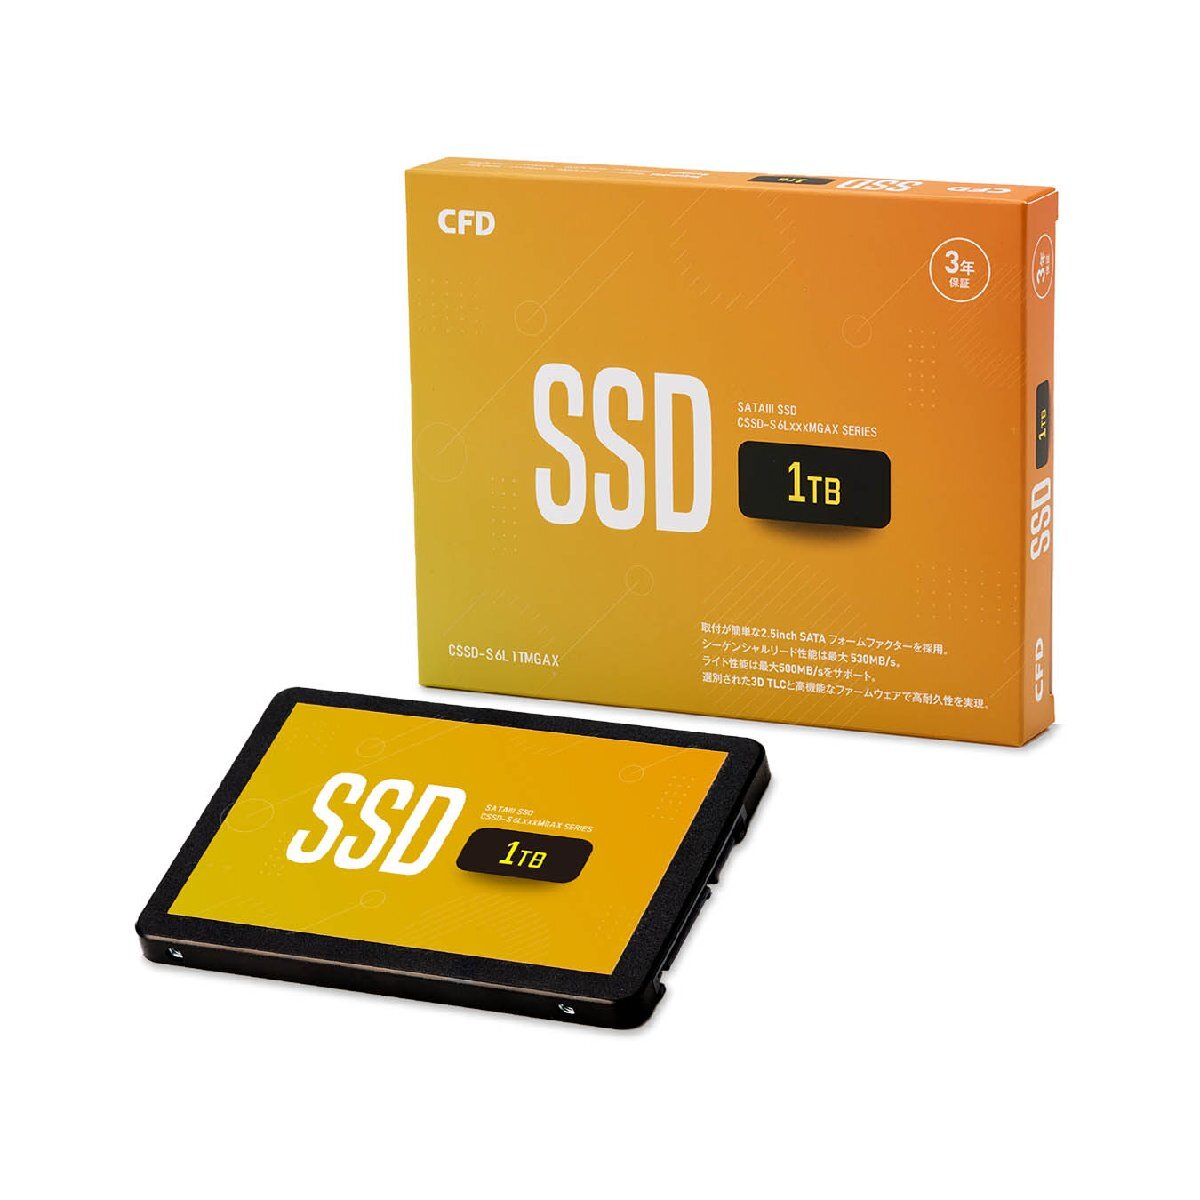 【決算セール】CFD 1TB SSD MGAX シリーズ SATA接続 2.5型 CSSD-S6L1TMGAX 国内3年保証 2.5インチ メール便送料無料の画像1